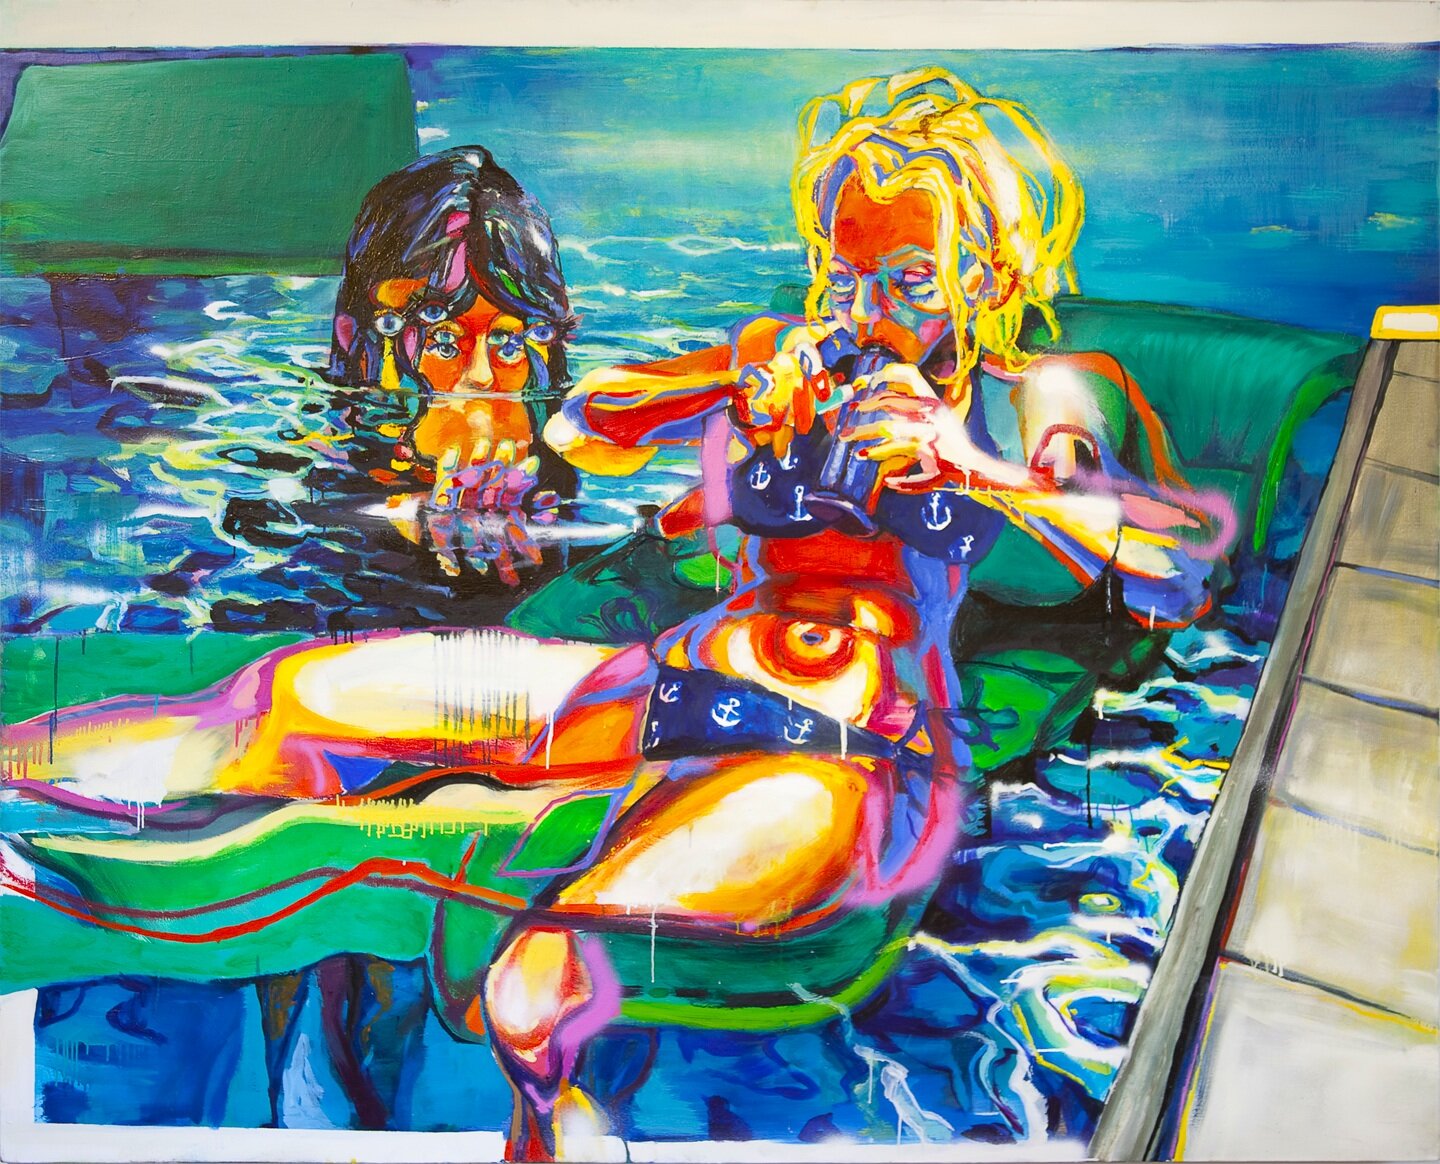 Drift, 62"x82:, oil and acrylic on canvas, 2012